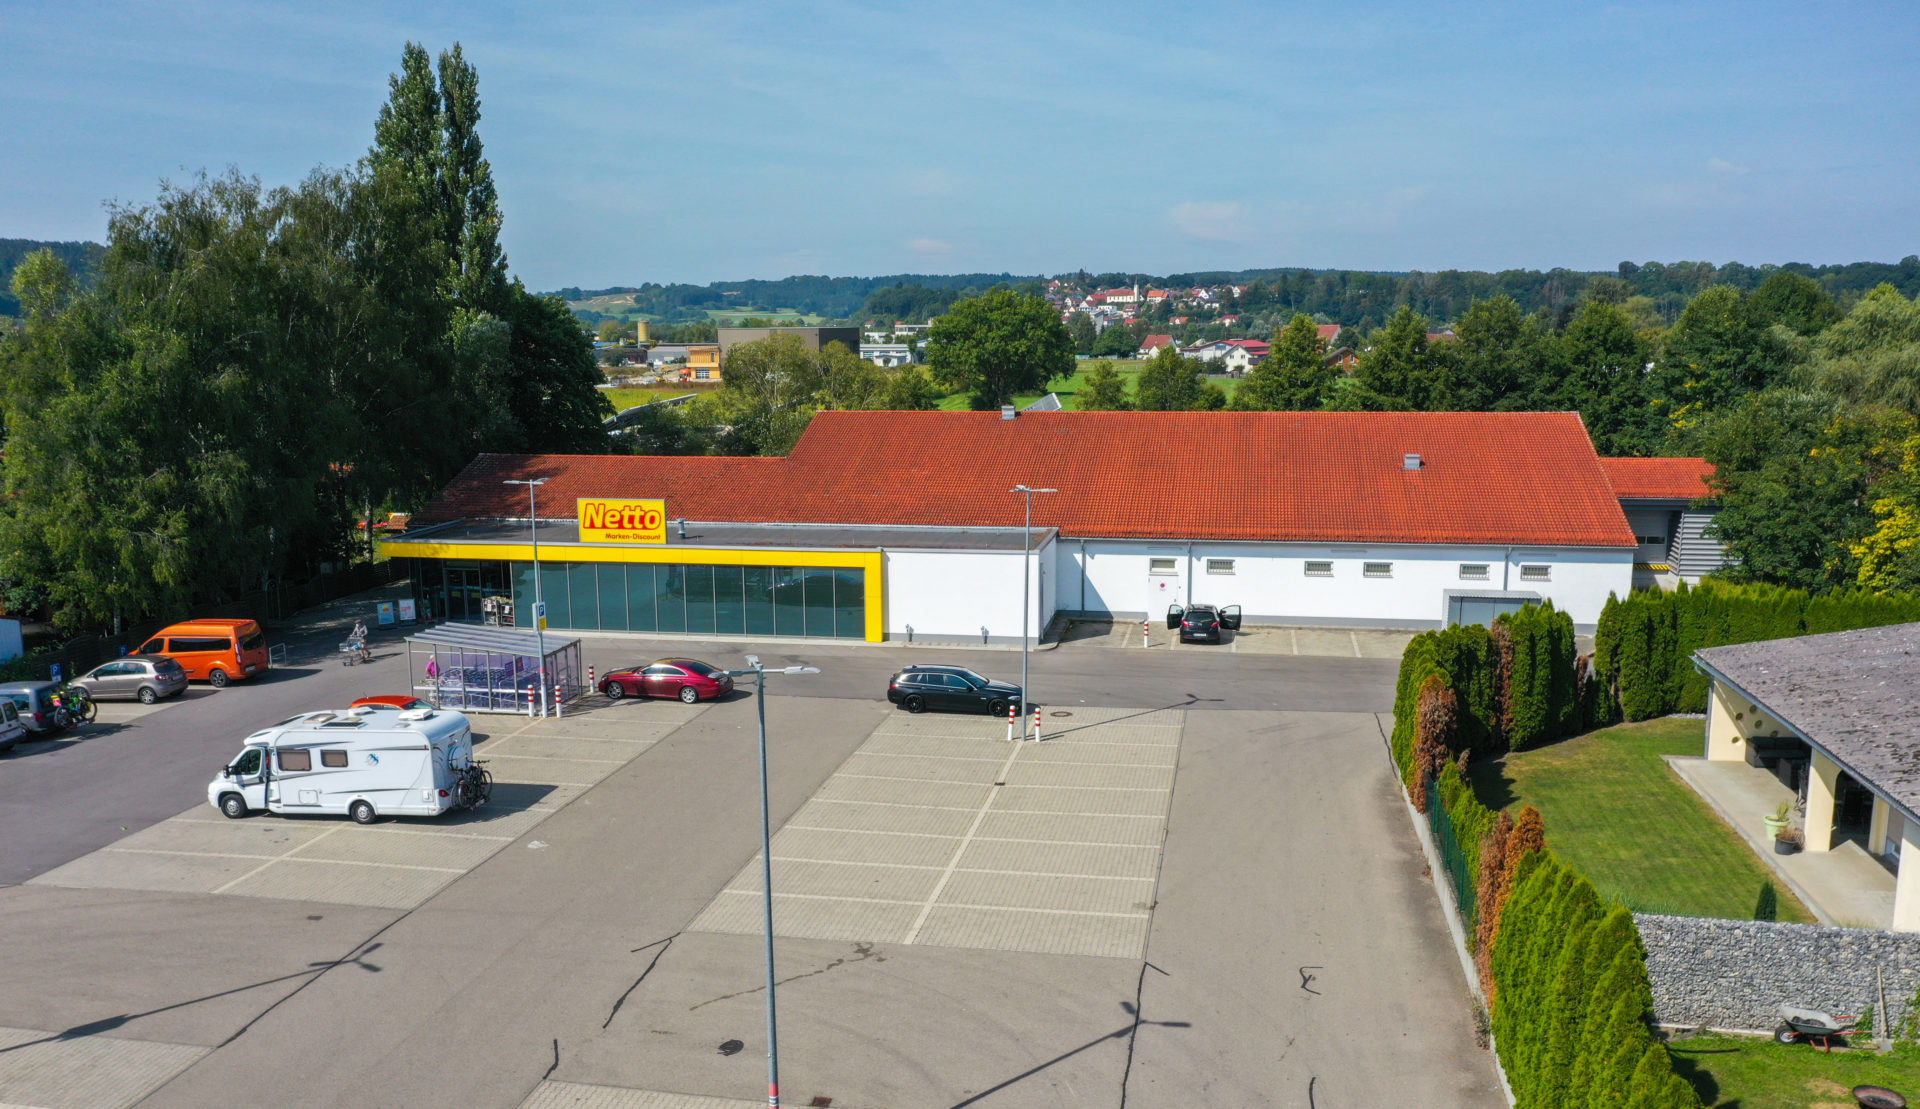 Umbau sowie eine Erweiterung eines bestehenden Nettomarktes in Krauchenwies